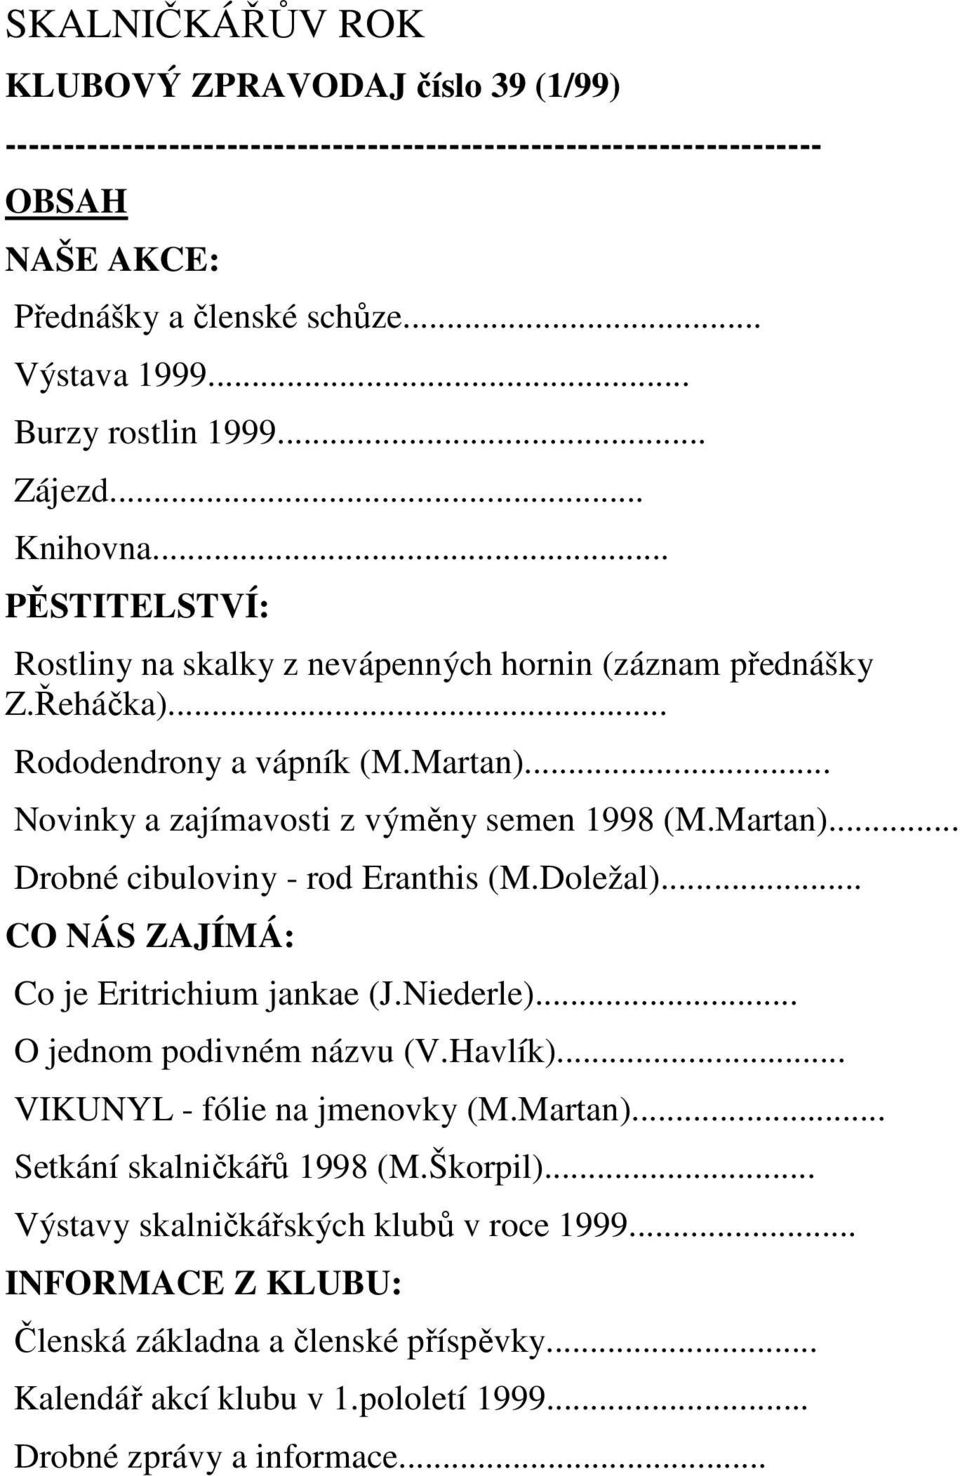 .. Novinky a zajímavosti z výměny semen 1998 (M.Martan)... Drobné cibuloviny - rod Eranthis (M.Doležal)... CO NÁS ZAJÍMÁ: Co je Eritrichium jankae (J.Niederle)... O jednom podivném názvu (V.Havlík).